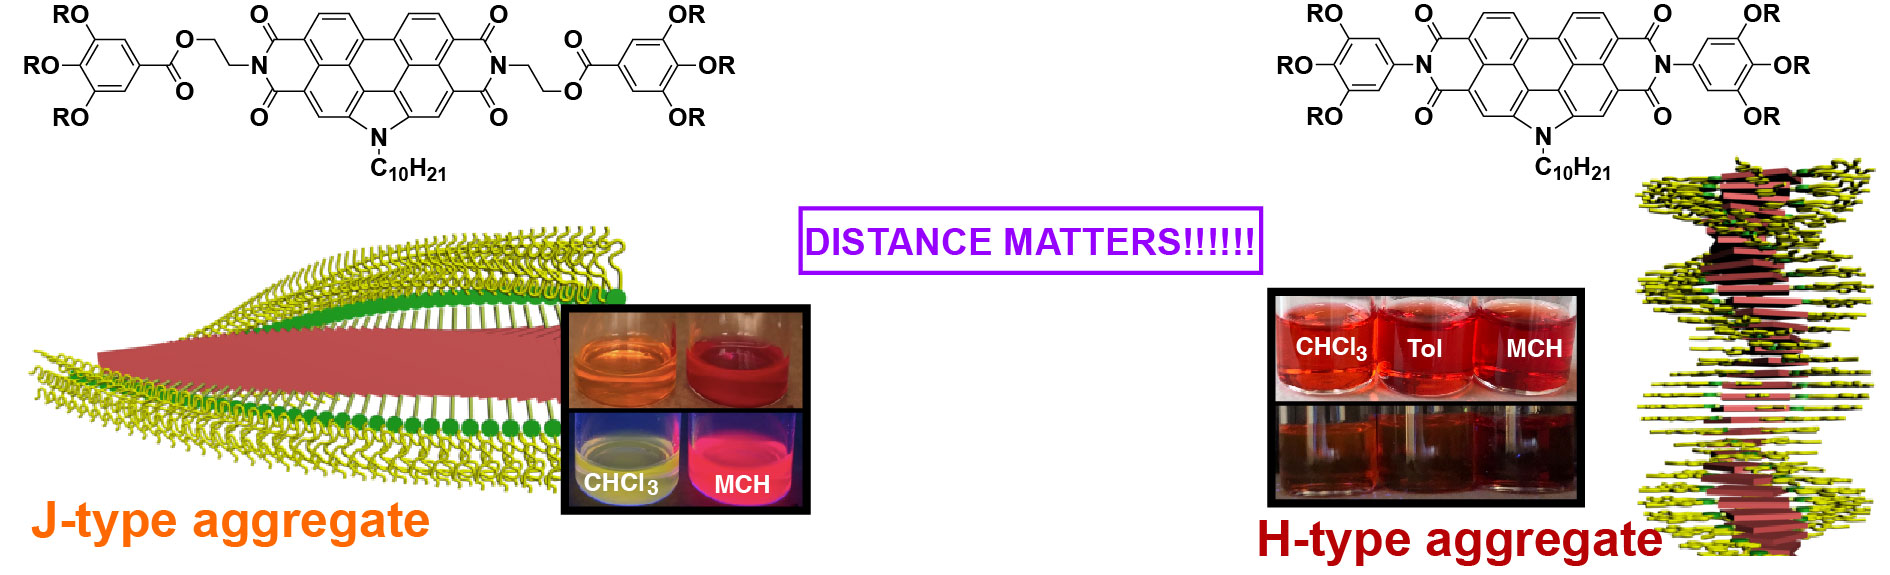 _jacs_distance matters_toc